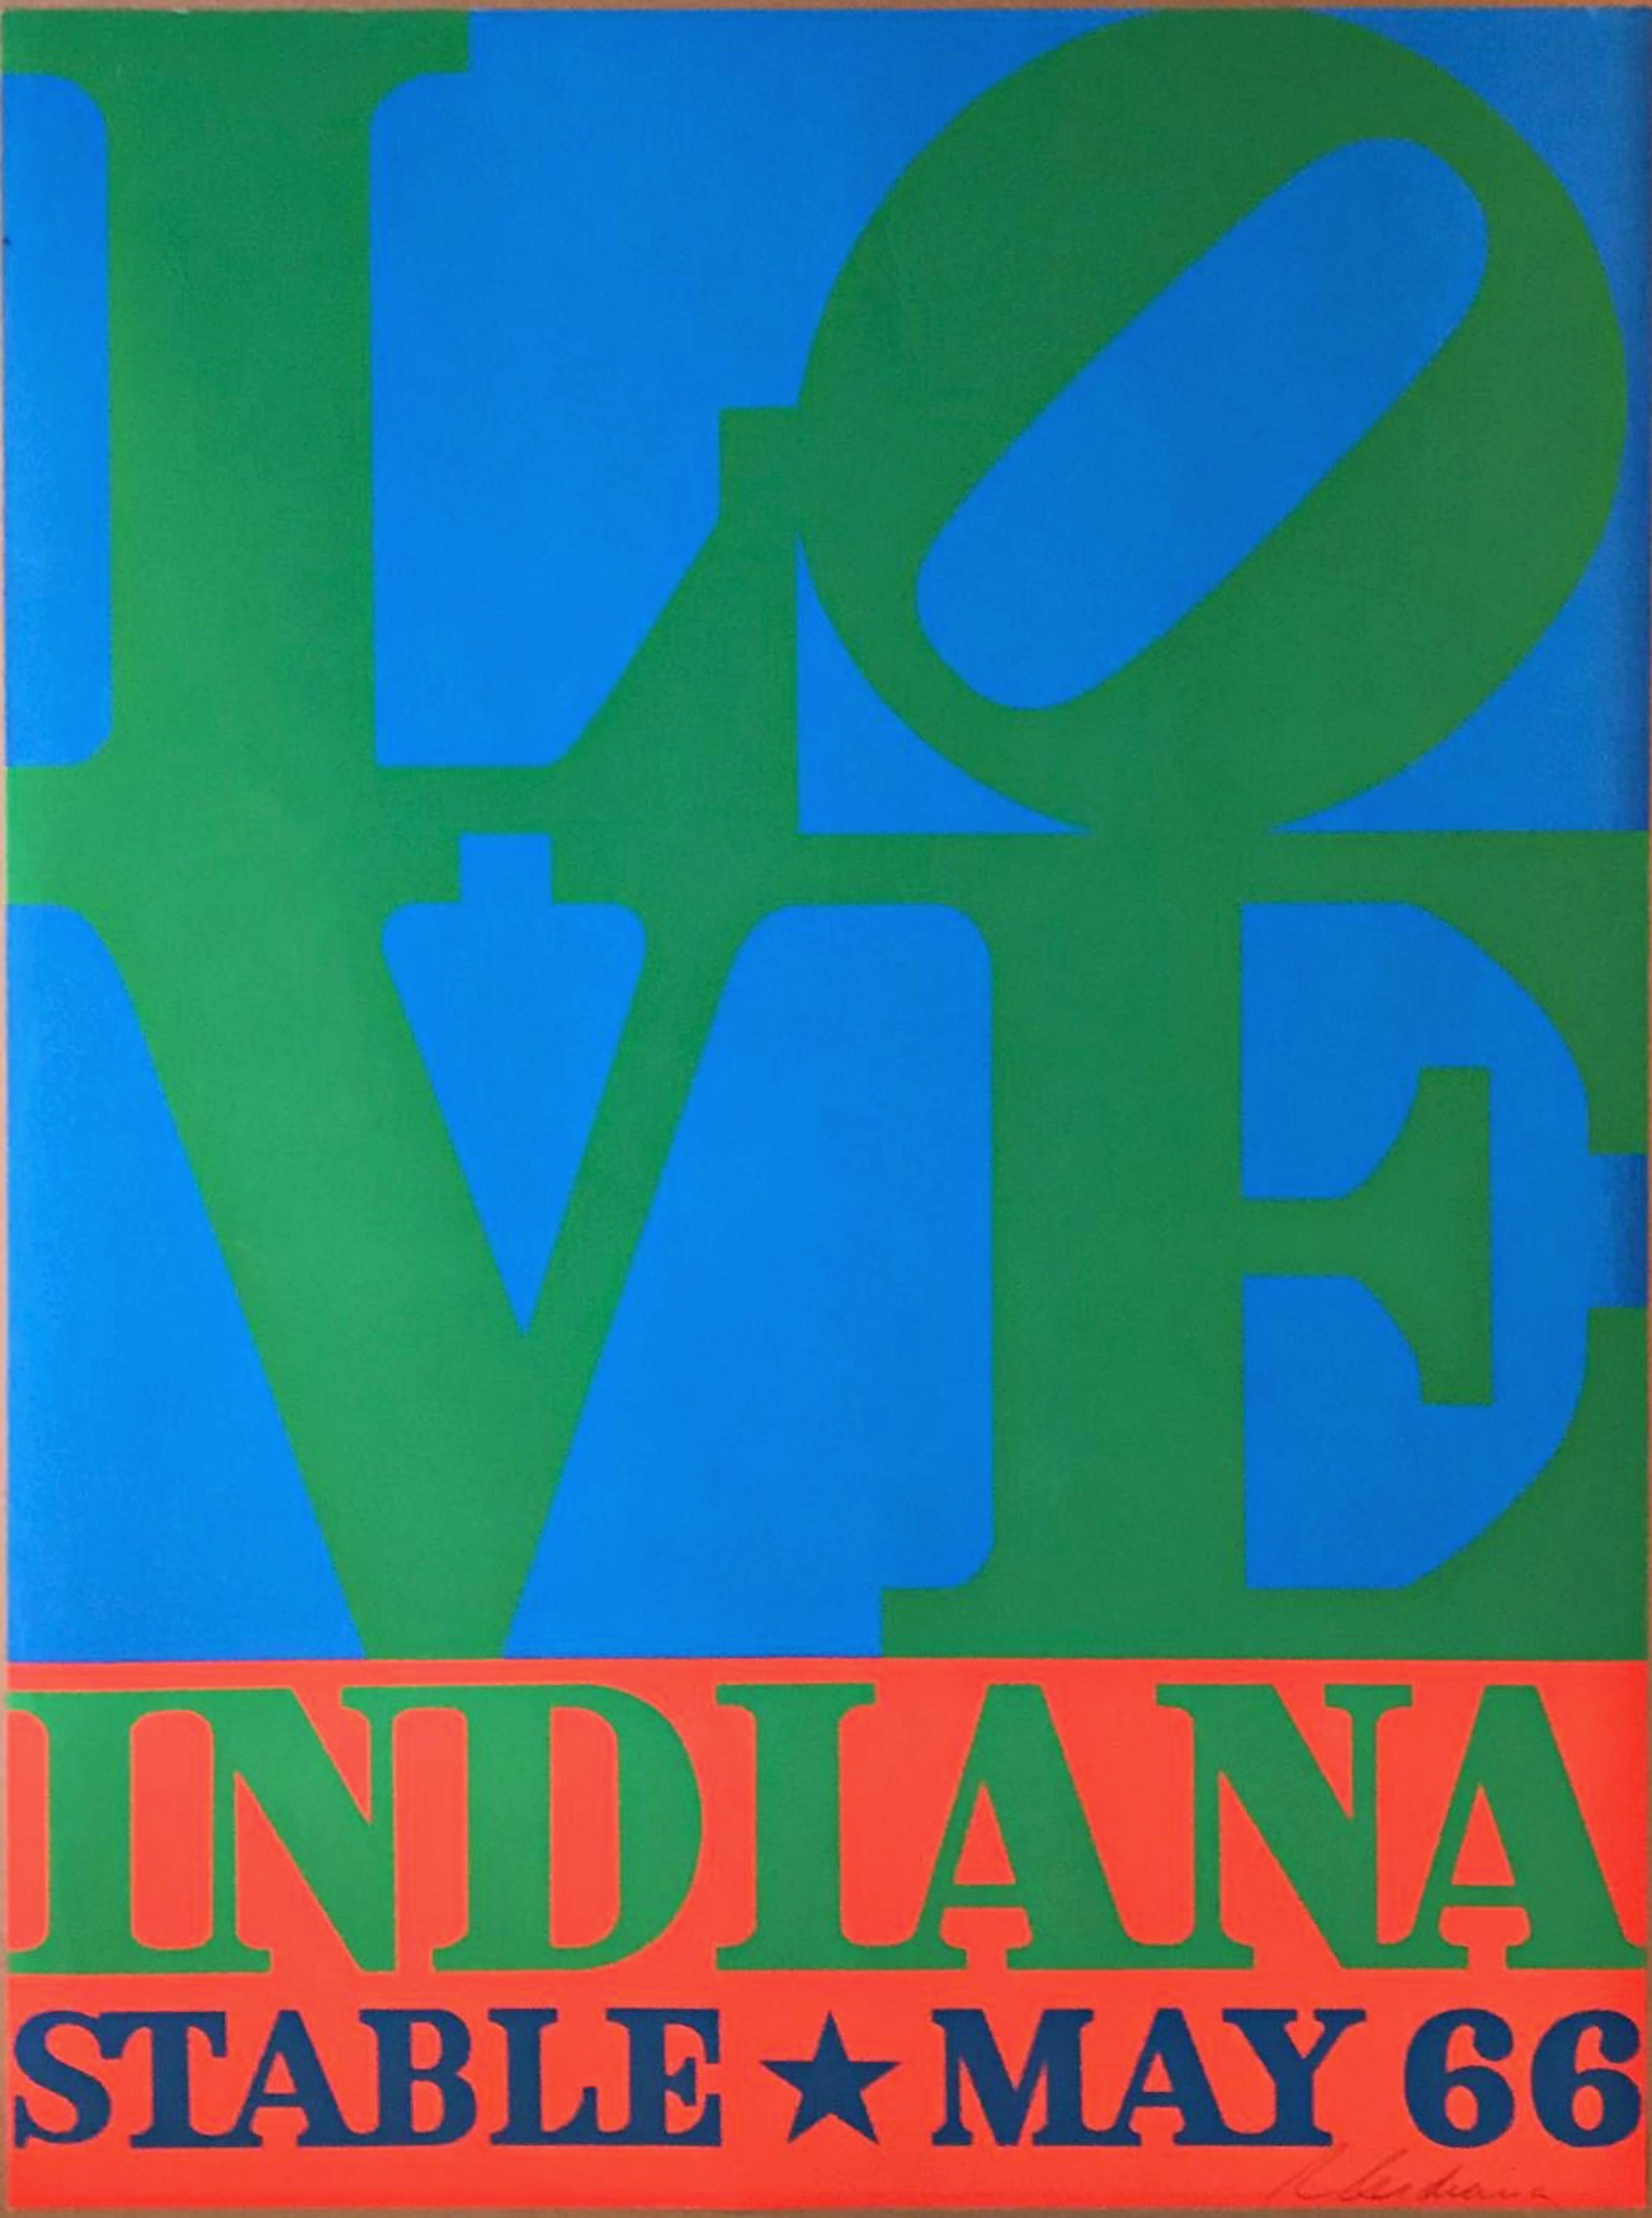 Robert Indiana
LOVE, Stable Gallery (handsigniert), 1966
Siebdruck auf Velinpapier. Handsigniert von Robert Indiana
33 1/2 × 24 Zoll
Handsigniert unten rechts vorne 
Herausgegeben von der Stable Gallery
Ungerahmt
Dies ist das